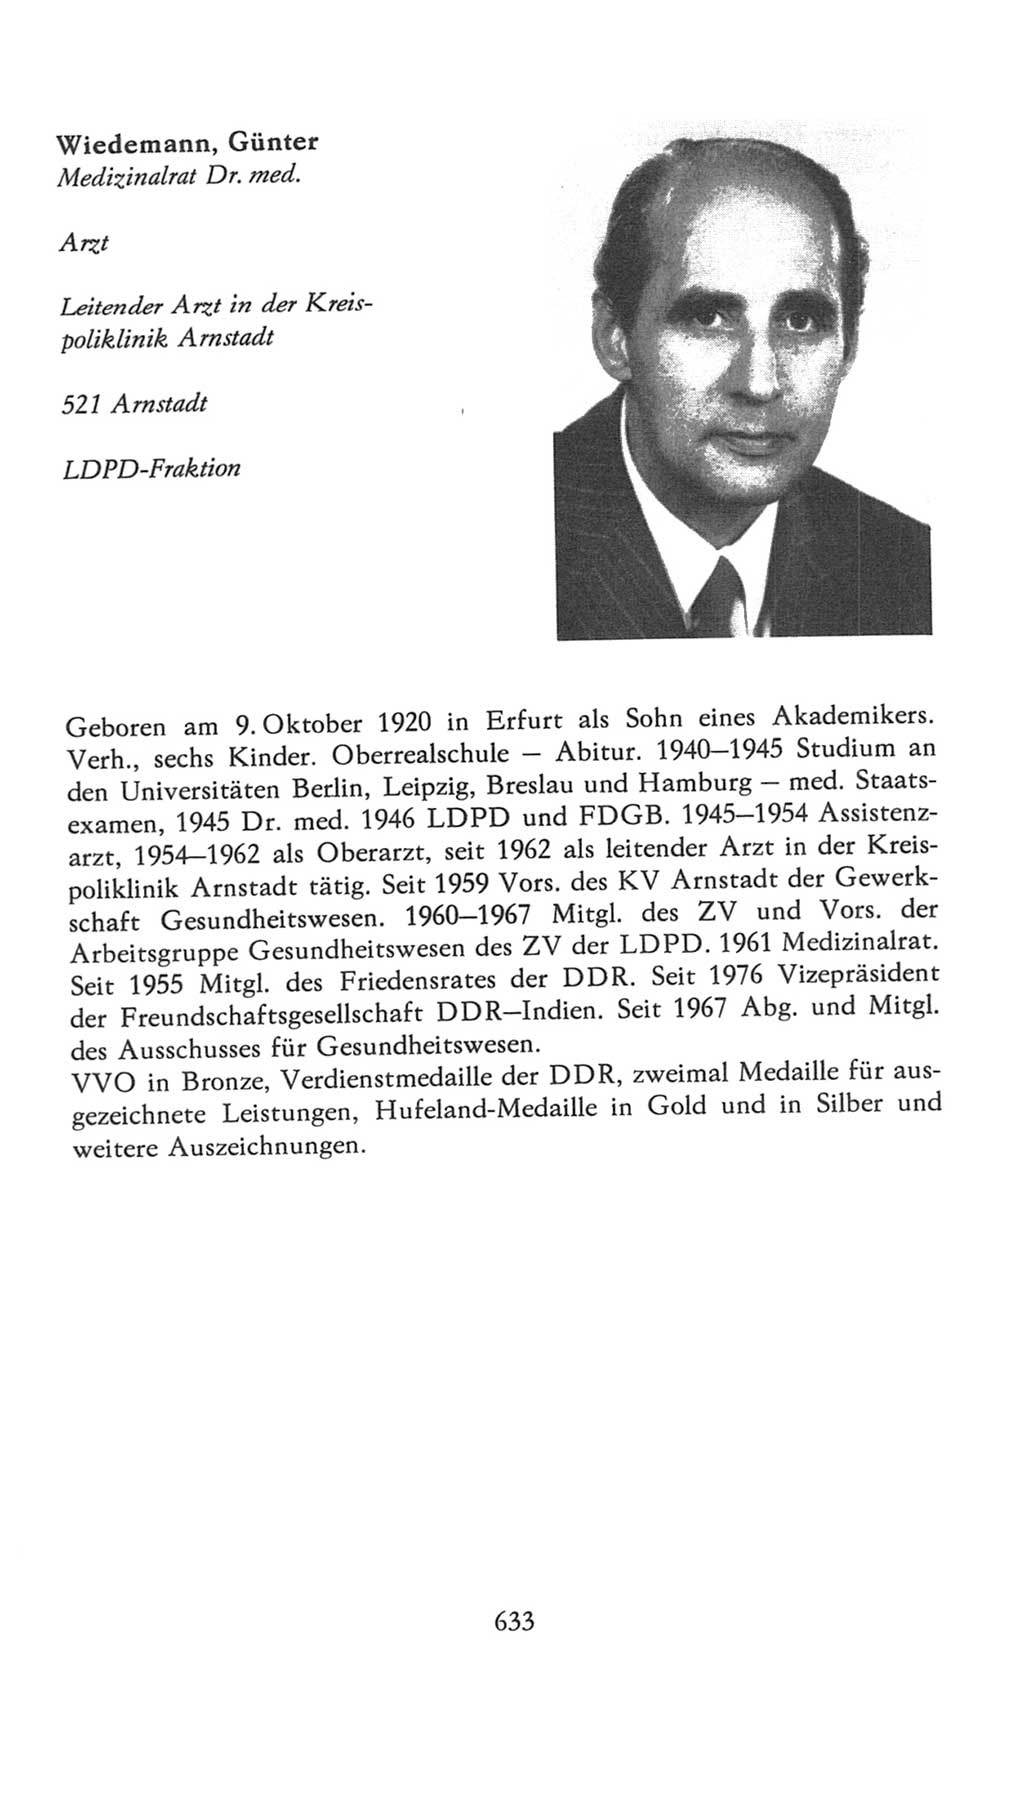 Volkskammer (VK) der Deutschen Demokratischen Republik (DDR), 7. Wahlperiode 1976-1981, Seite 633 (VK. DDR 7. WP. 1976-1981, S. 633)